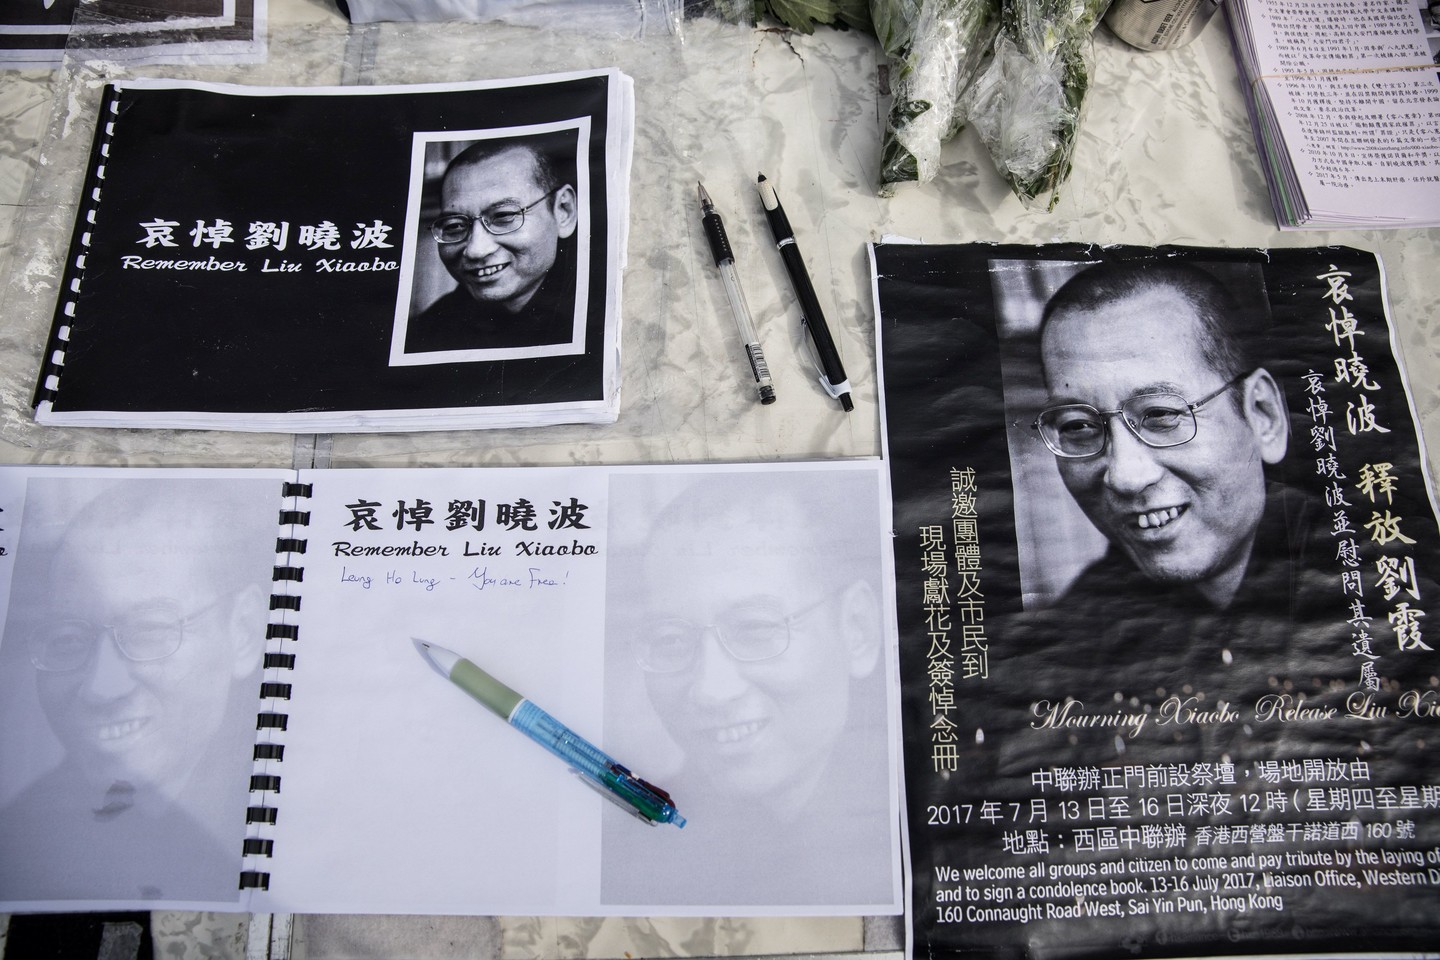  Palaidojus pelenus jūroje nebeliko vietos, kur Liu Xiaobo artimieji ir šalininkai galėtų susirinkti pareikšti pagarbos.<br> AFP/Scanpix nuotr.